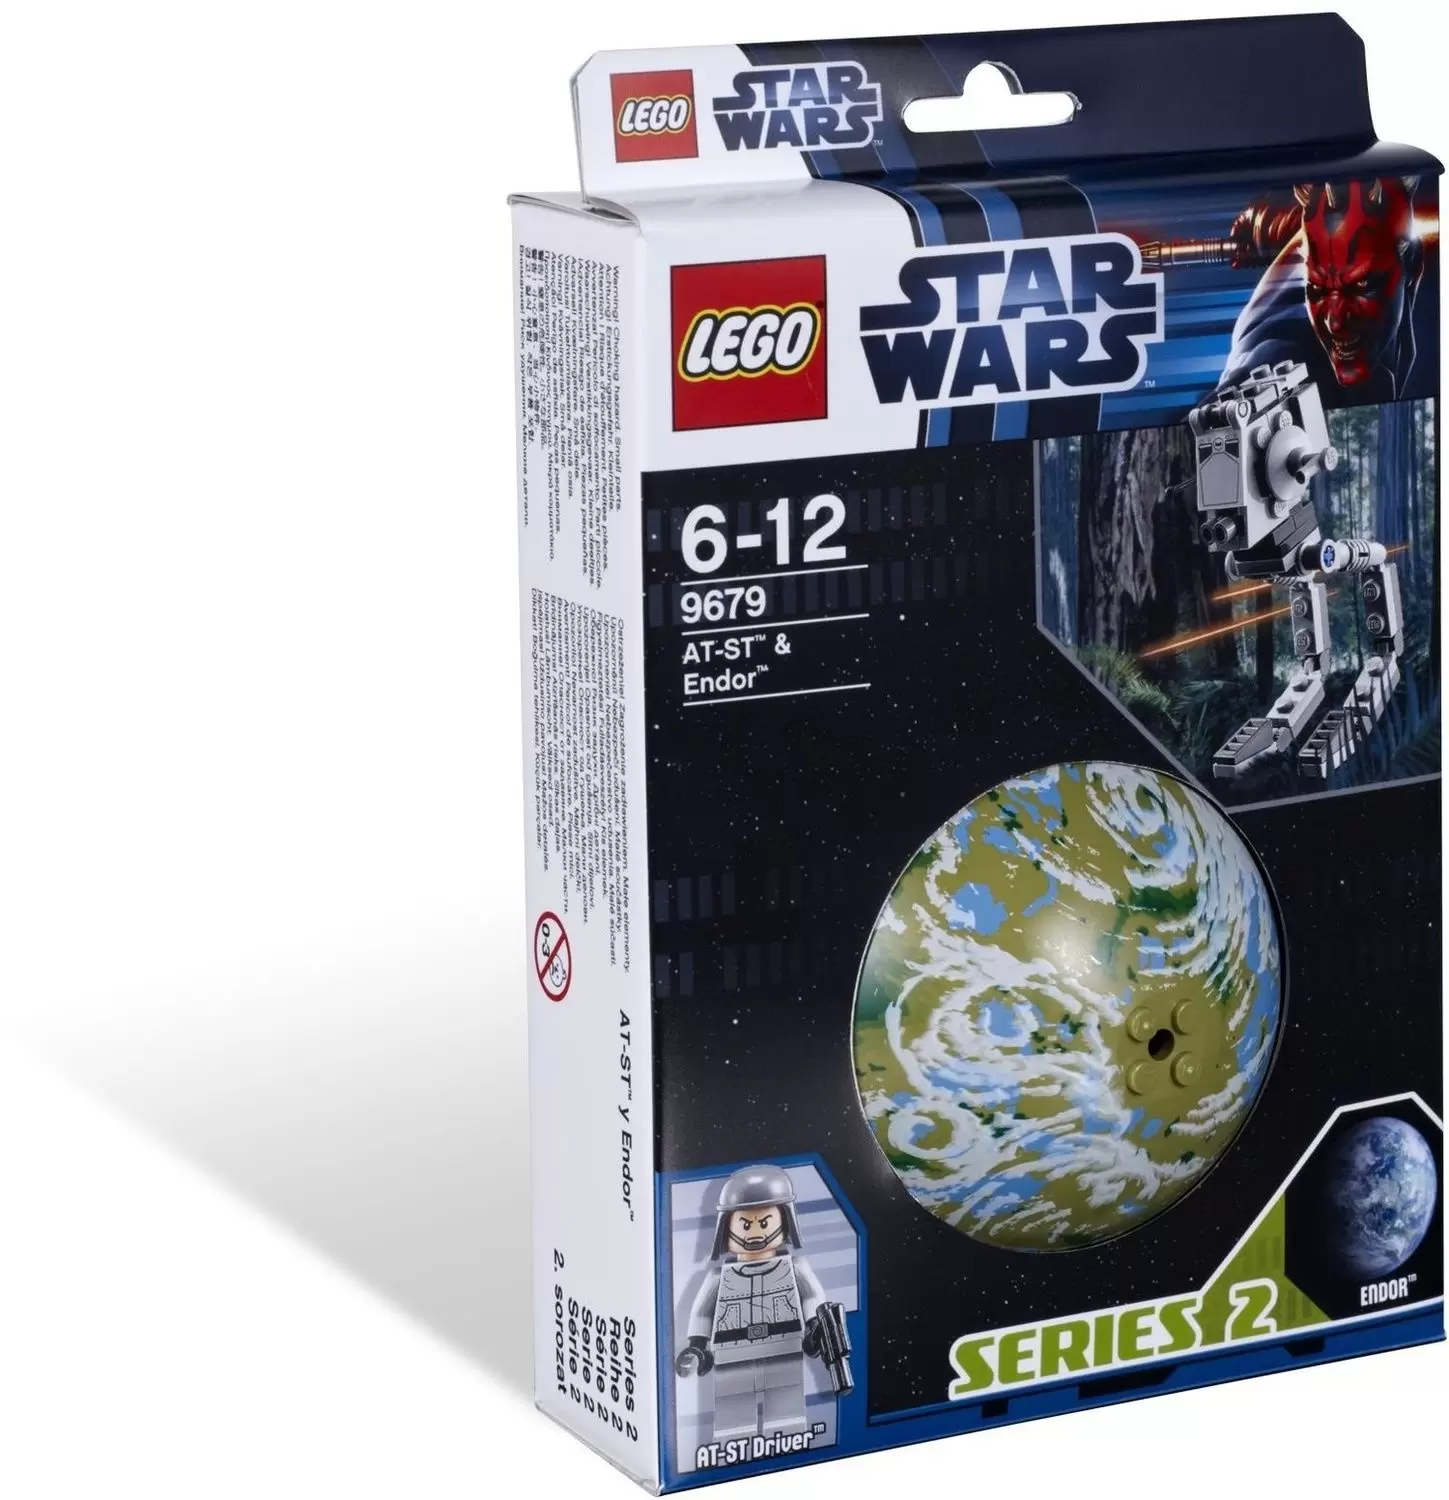 LEGO Star Wars - AT-ST & Endor